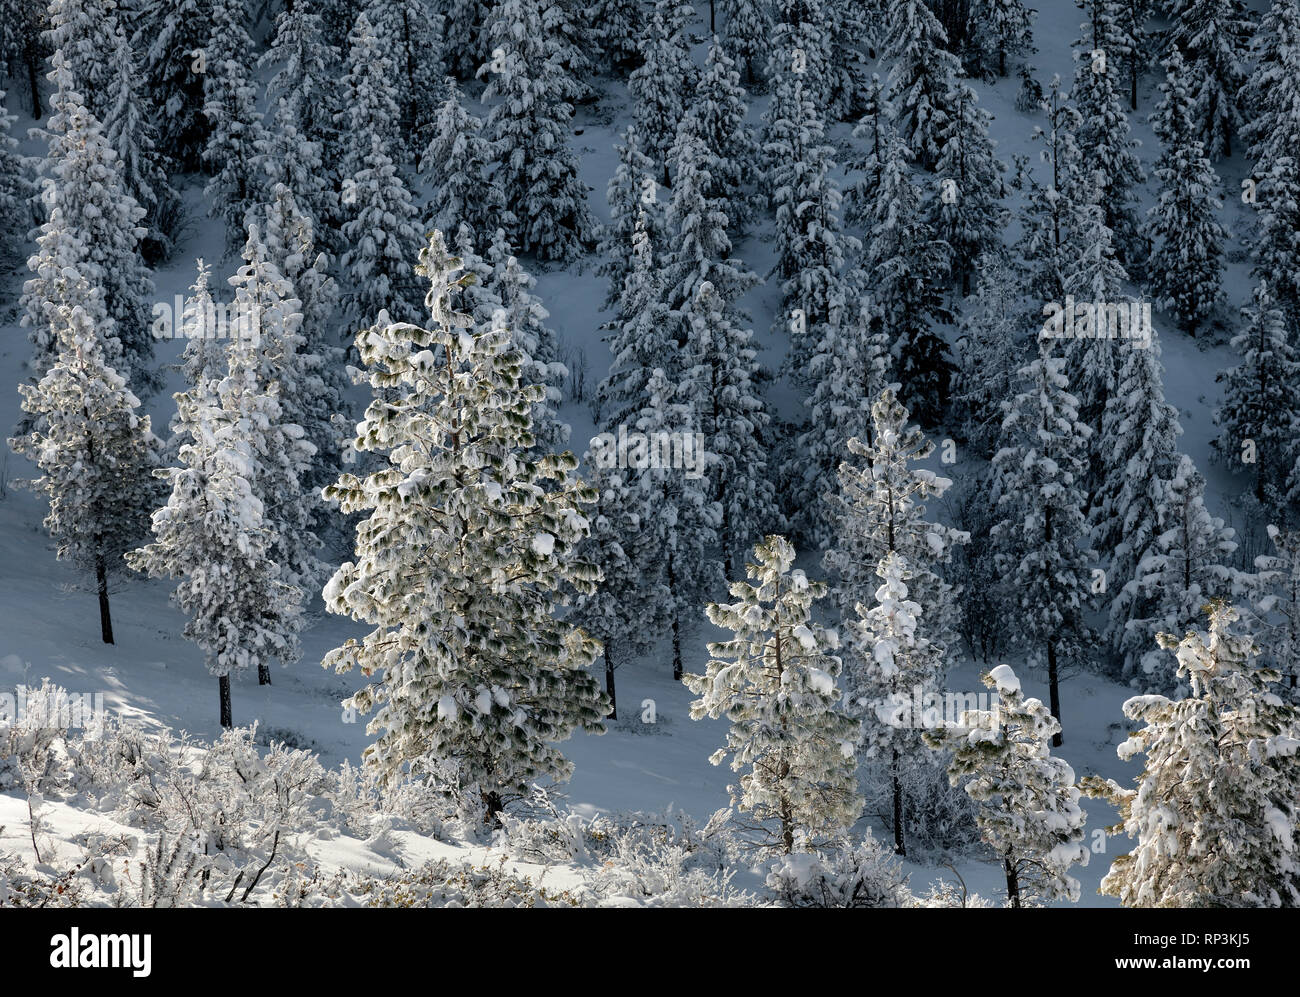 WA14468-00...WASHINGTON - Los árboles cubiertos de nieve en el Echo Ridge, por encima de la ciudad de Chelan. Foto de stock